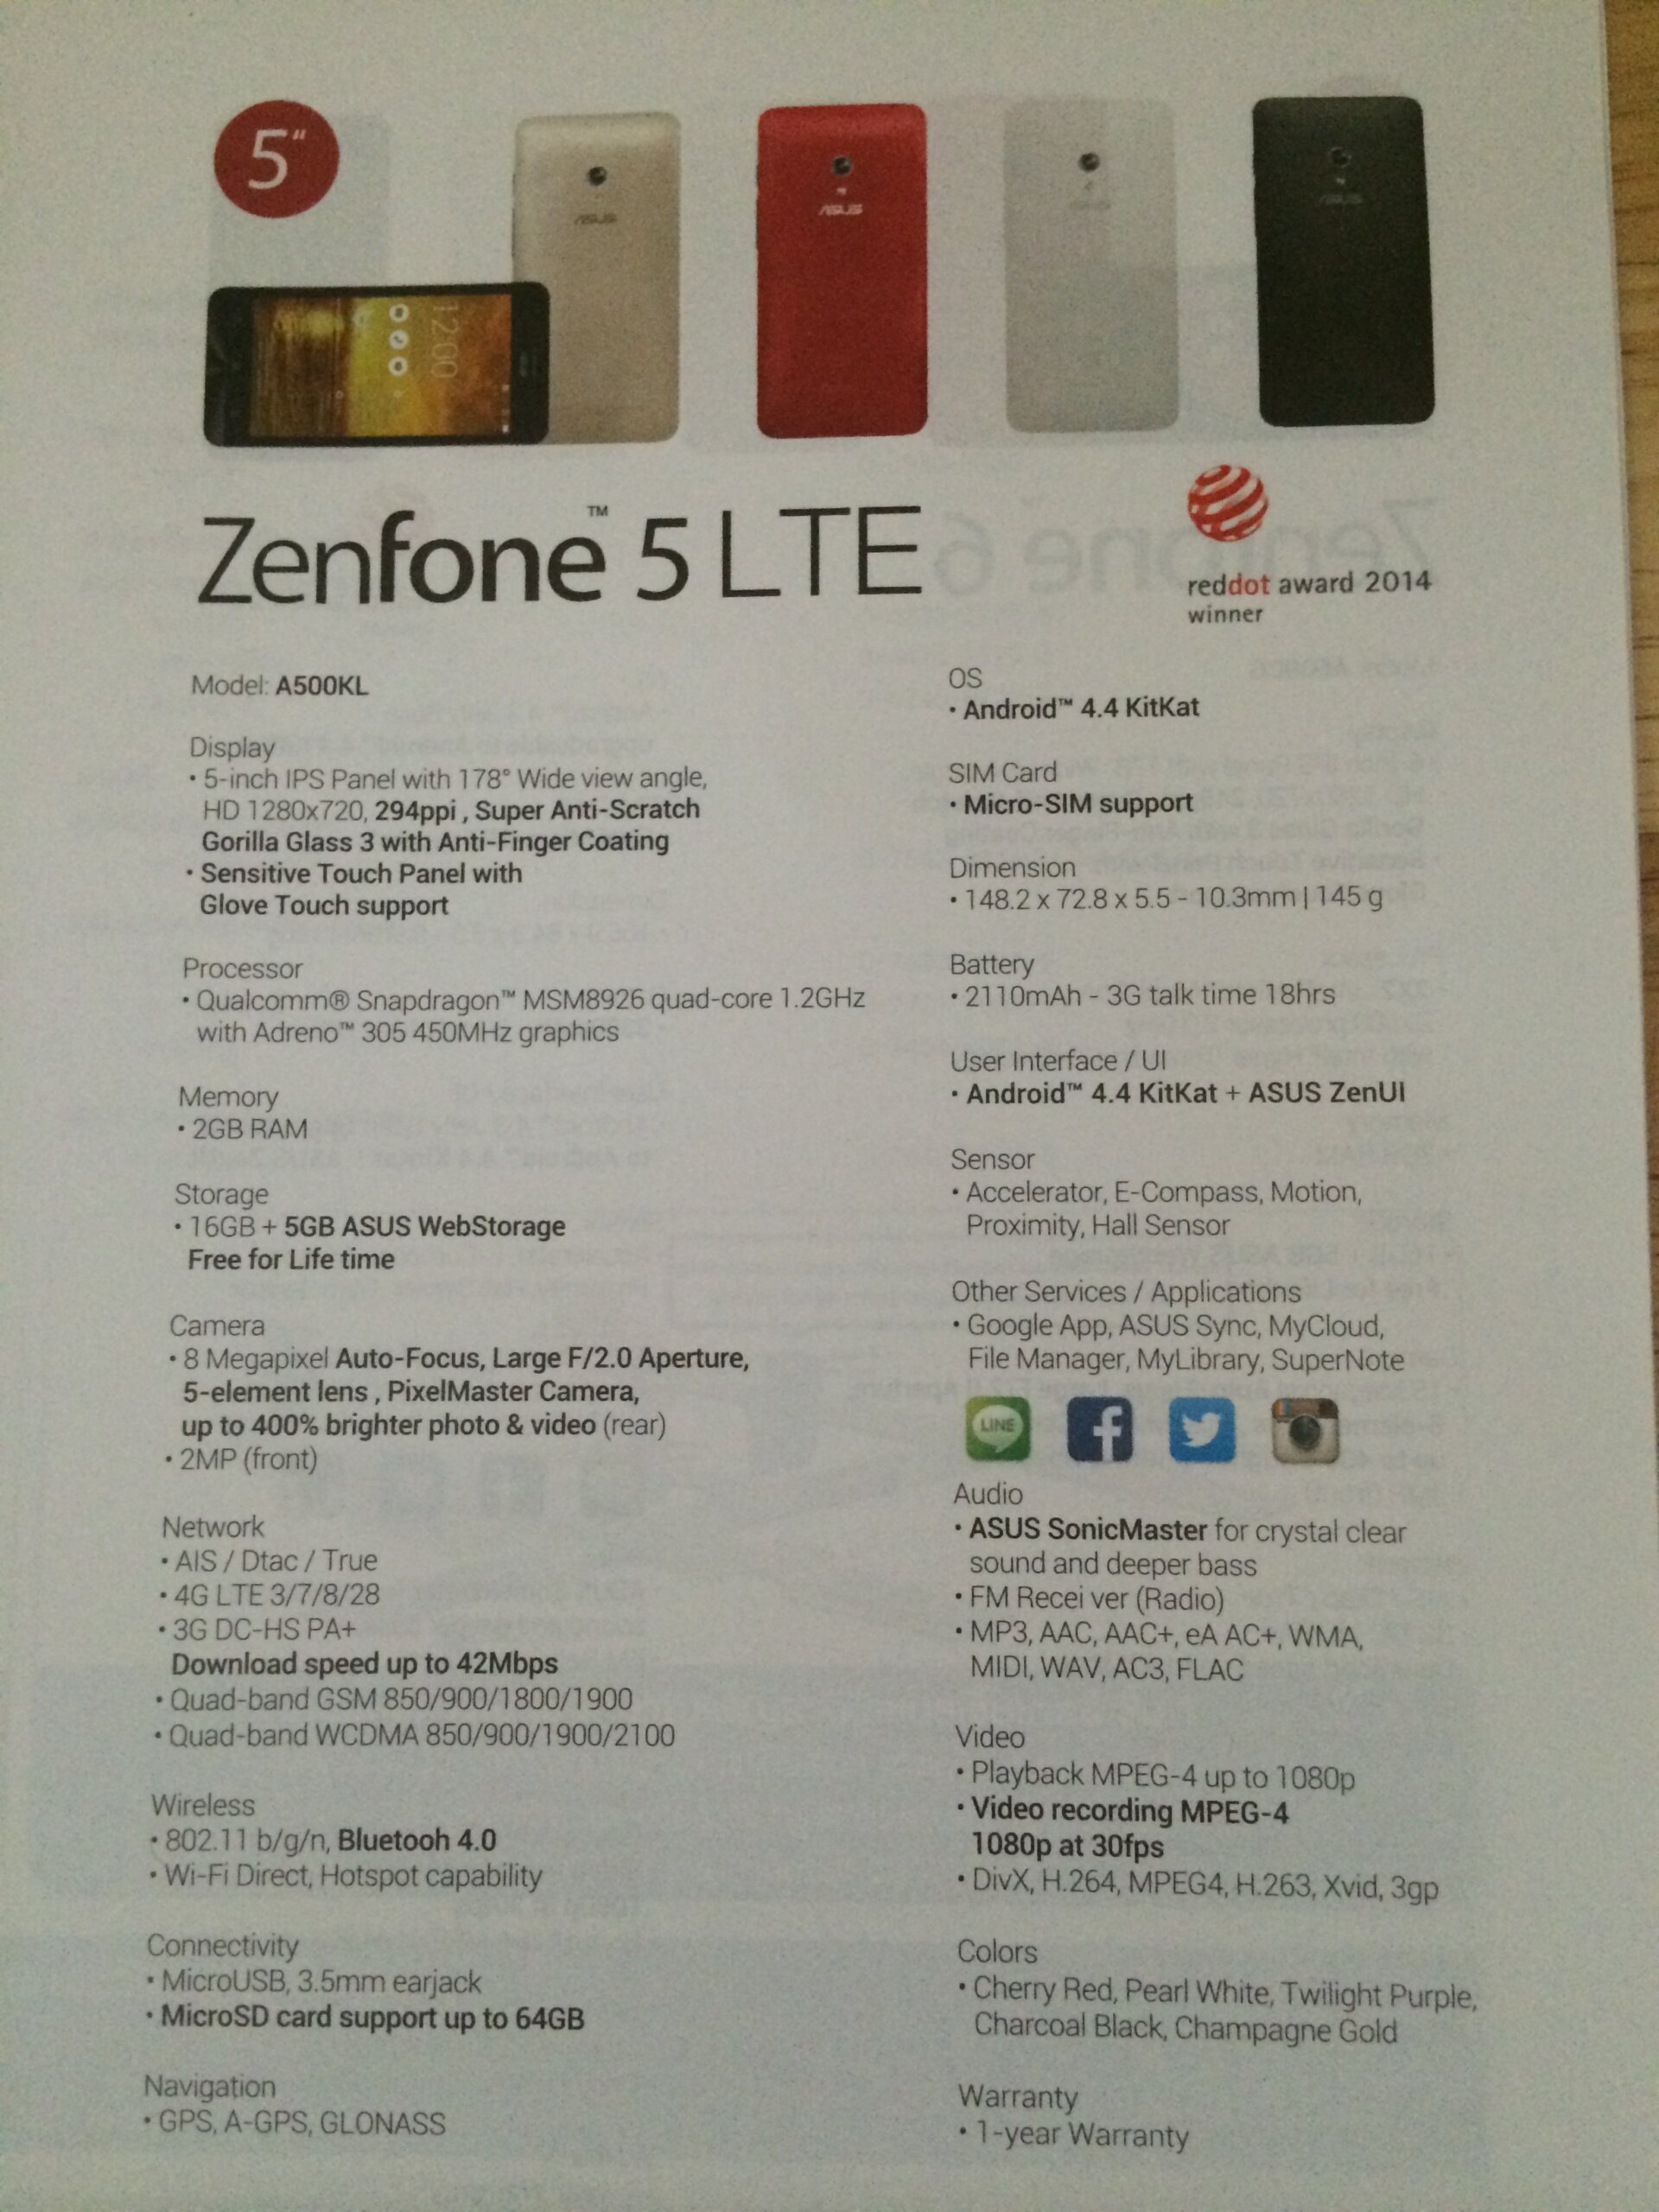 ใกล้ได้เจอแล้ว!! Asus Zenfone 5 LTE โผล่ในโบรชัวร์มือถือ Asus ประเทศไทยซะอย่างนั้น